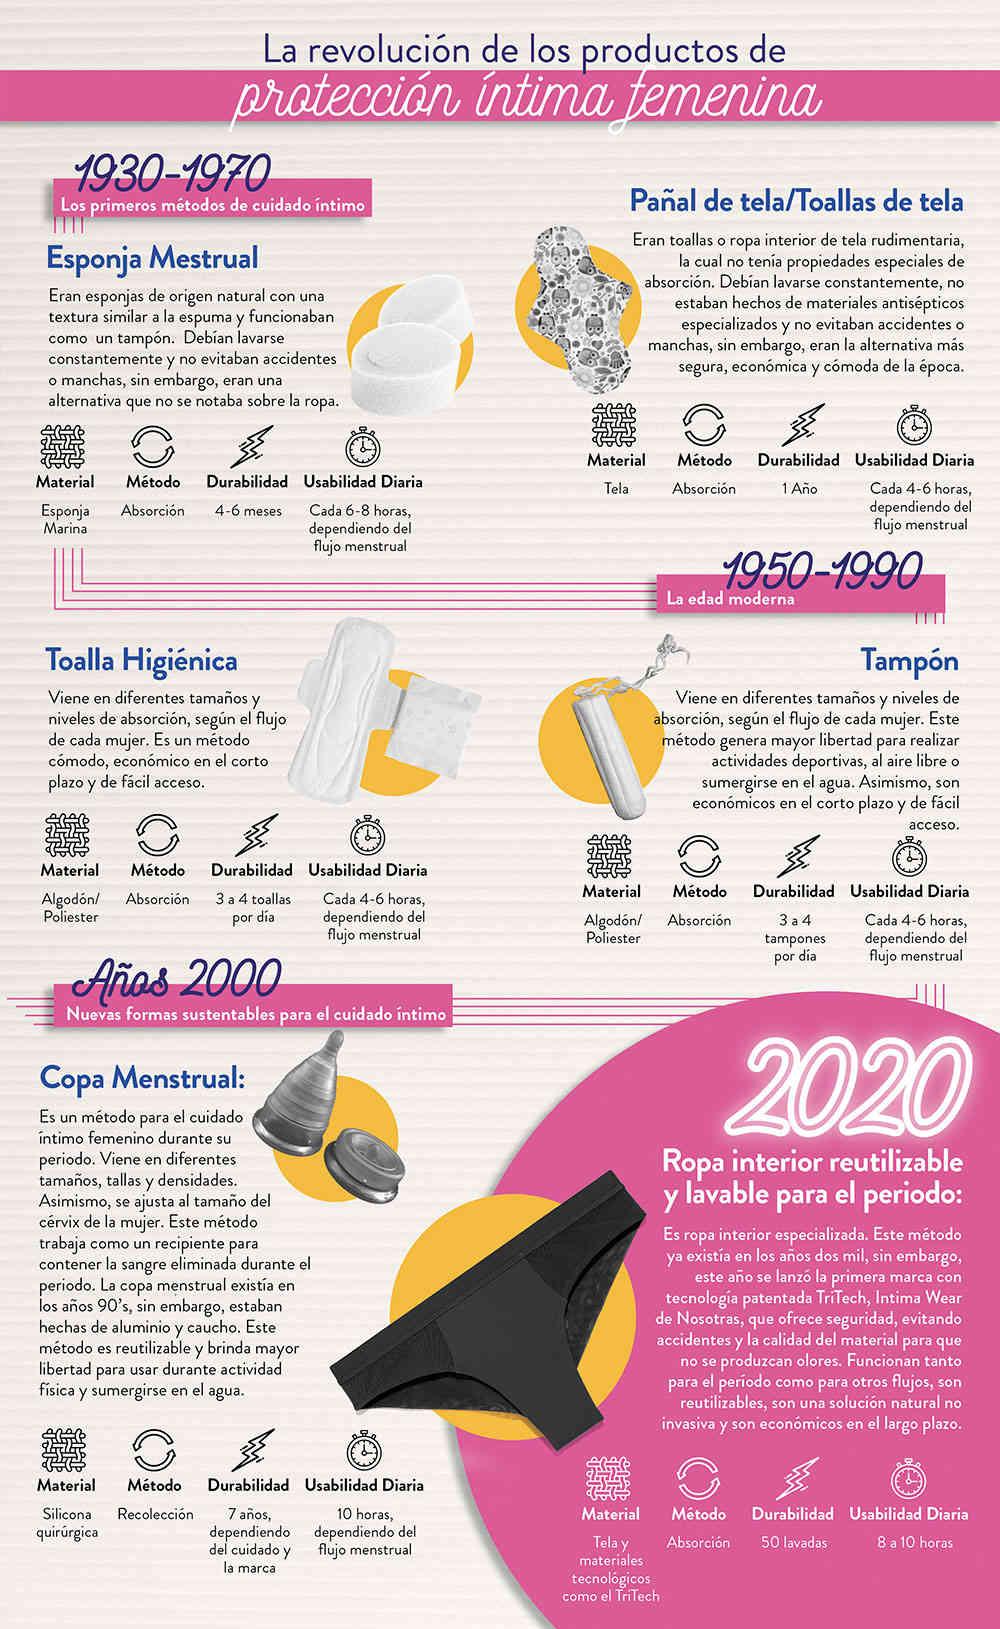 ¿Cómo está el mercado de higiene femenina en Colombia?